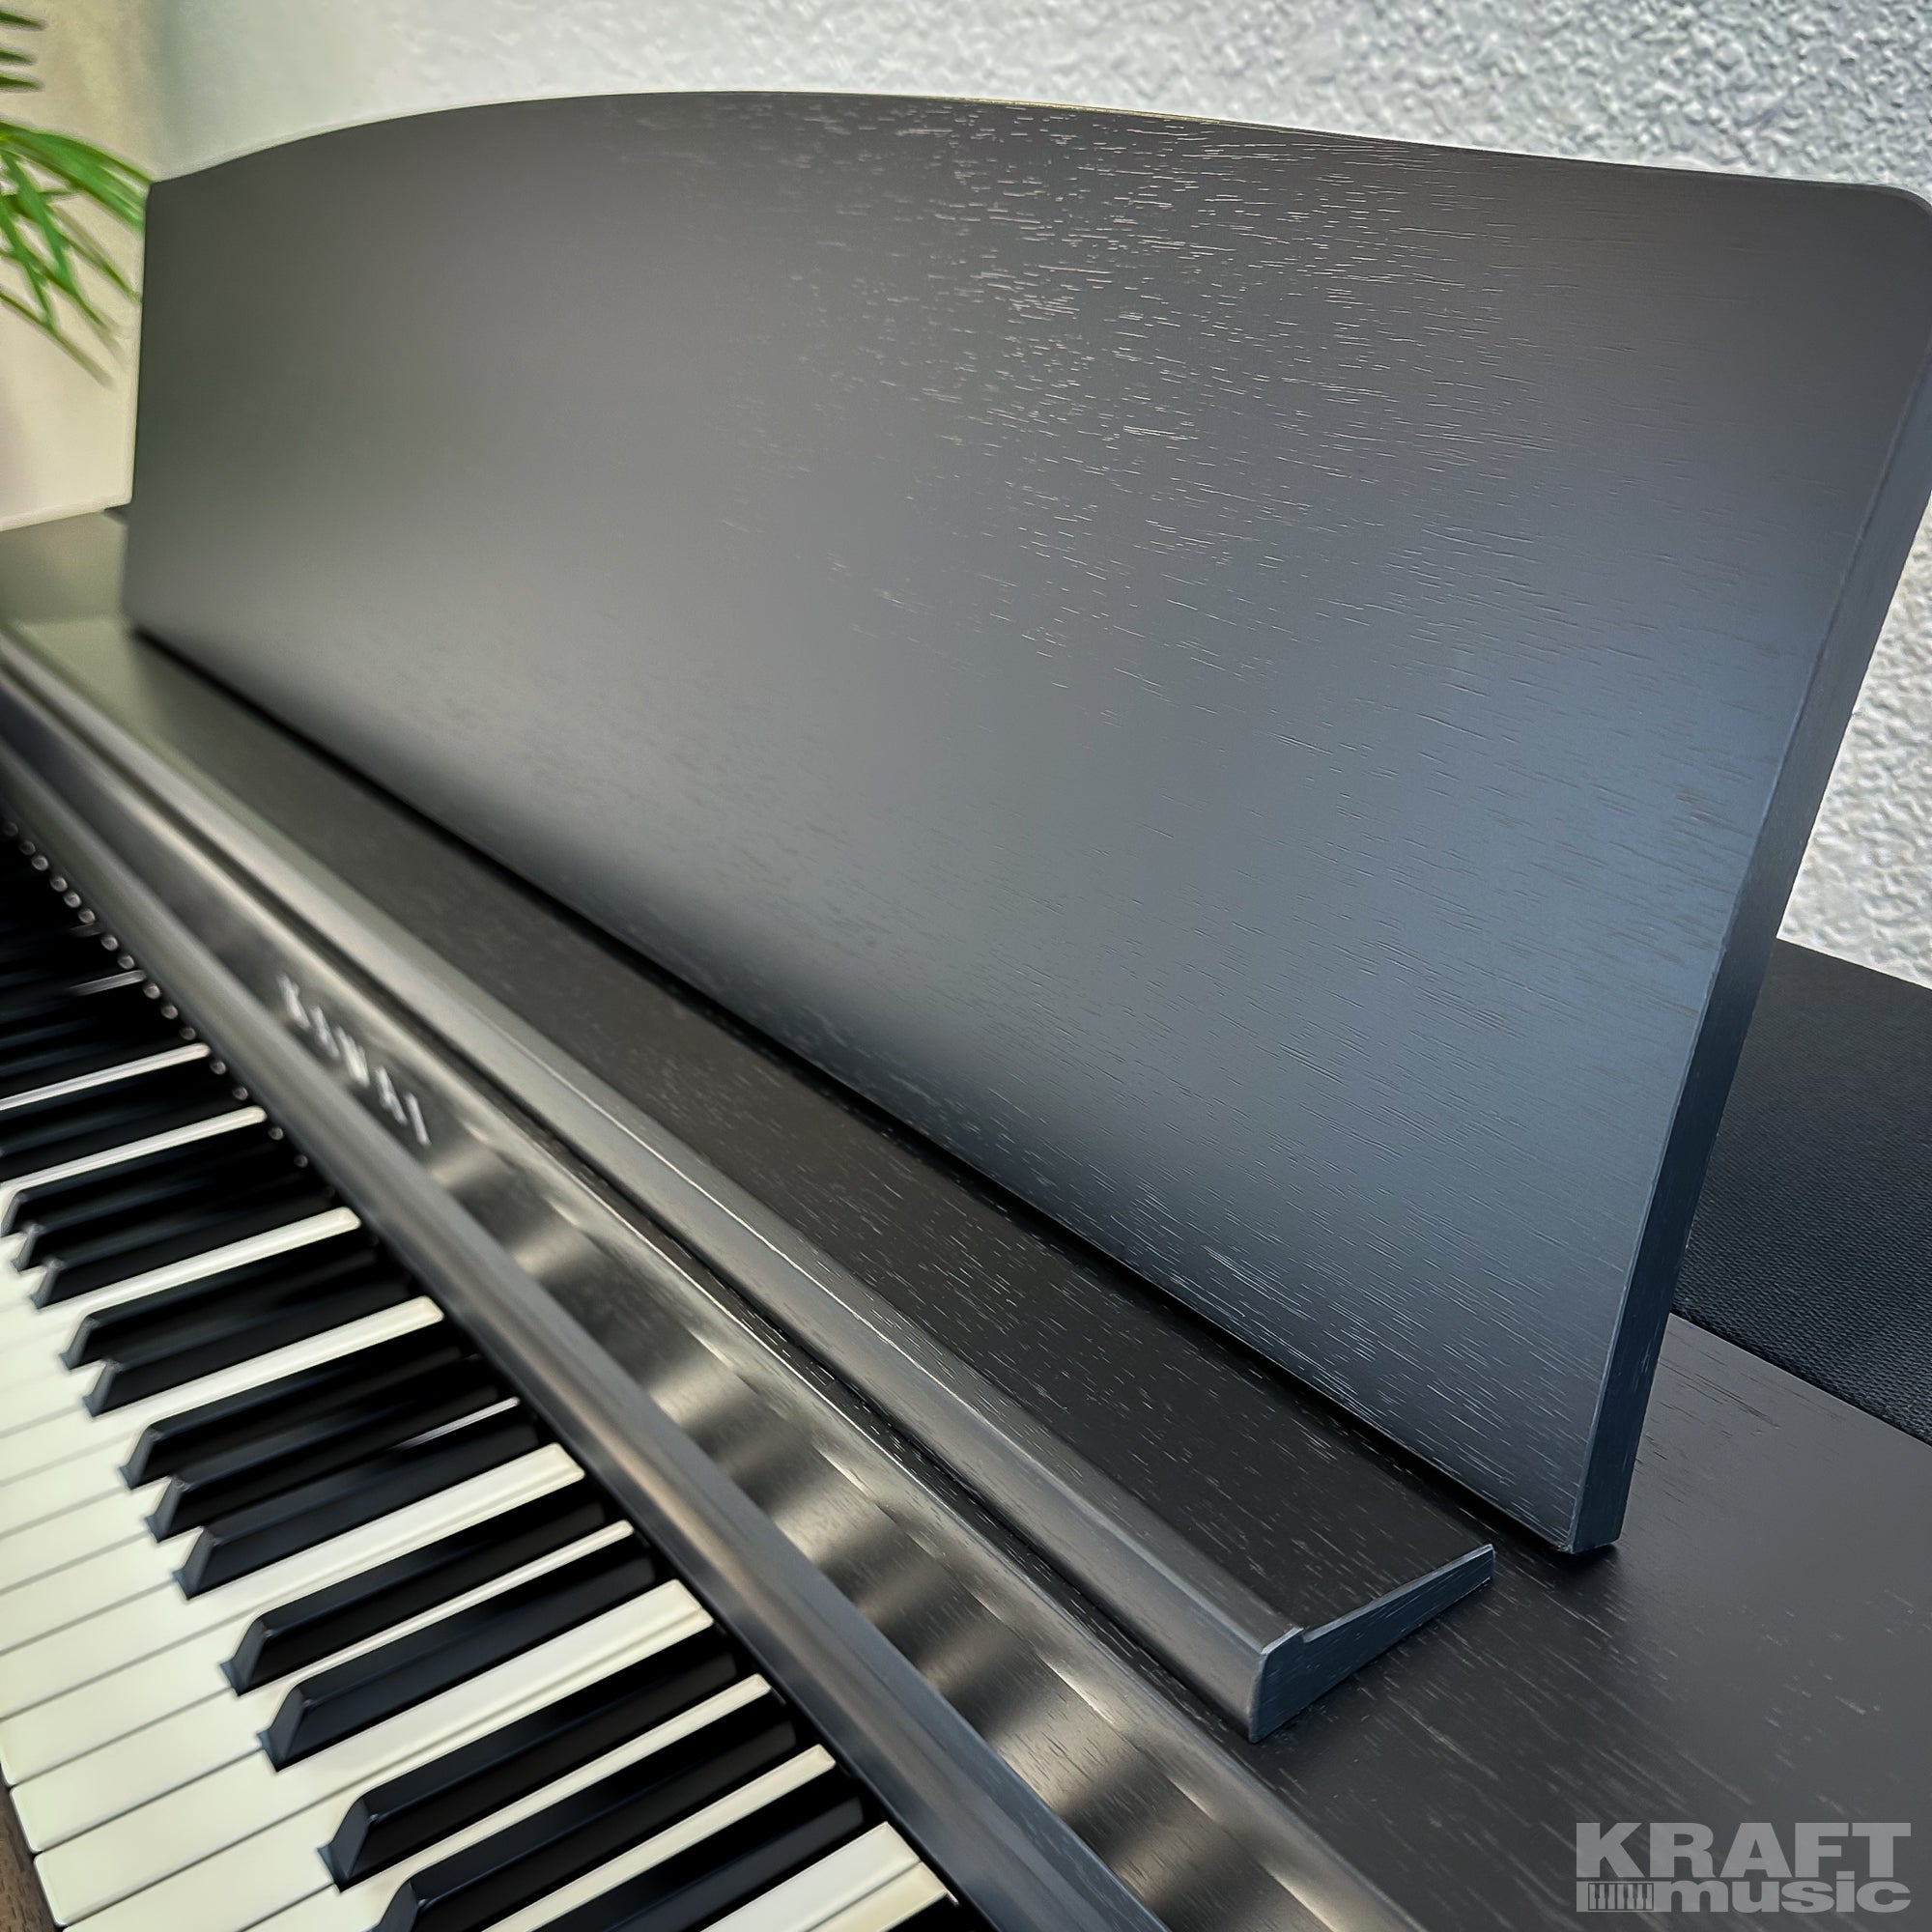 Kawai CN301 Digital Piano - Satin Black - Music rest